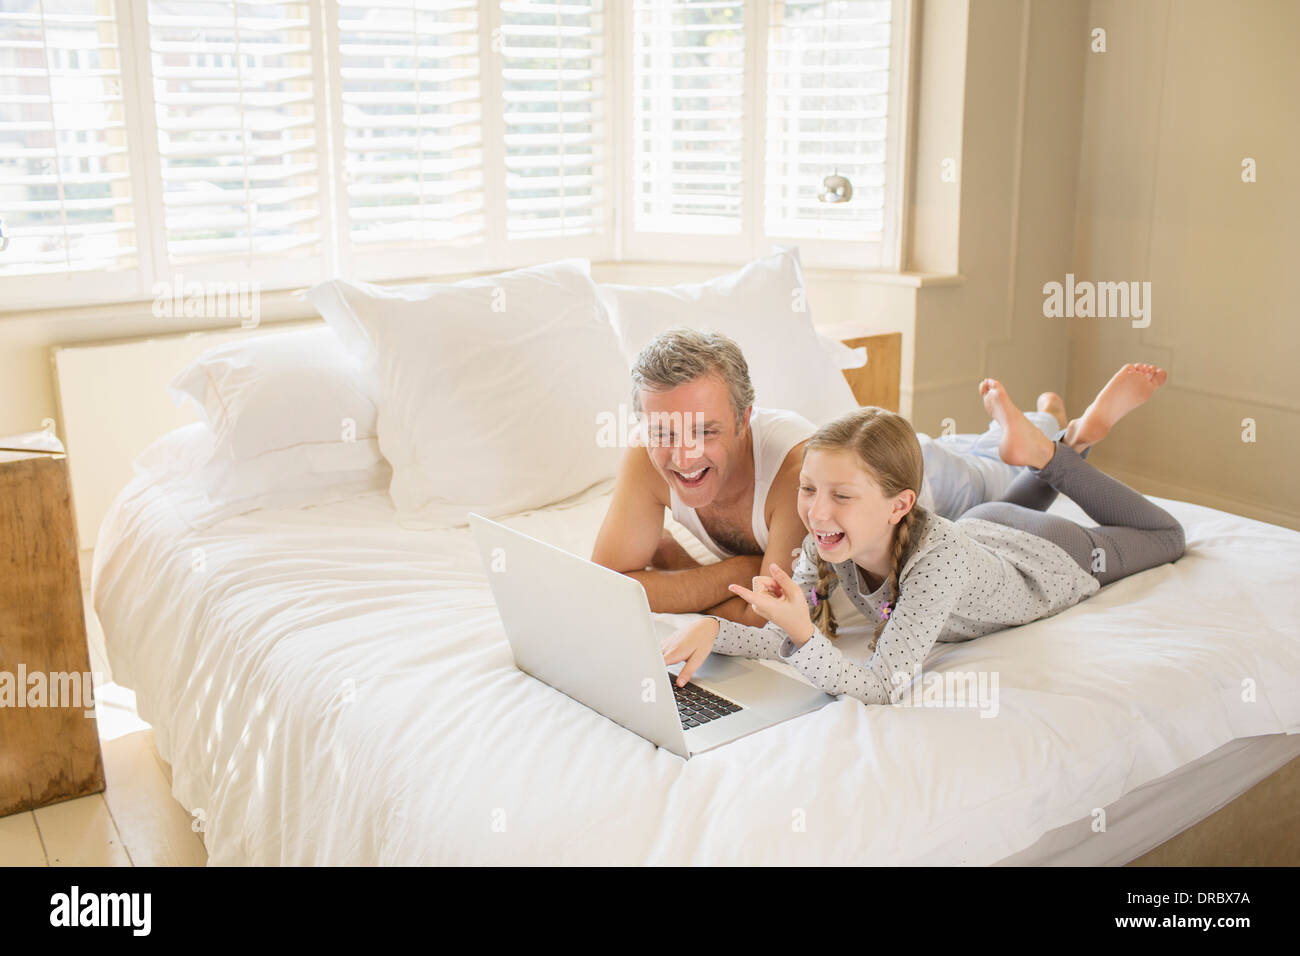 Père et fille using laptop on bed Banque D'Images